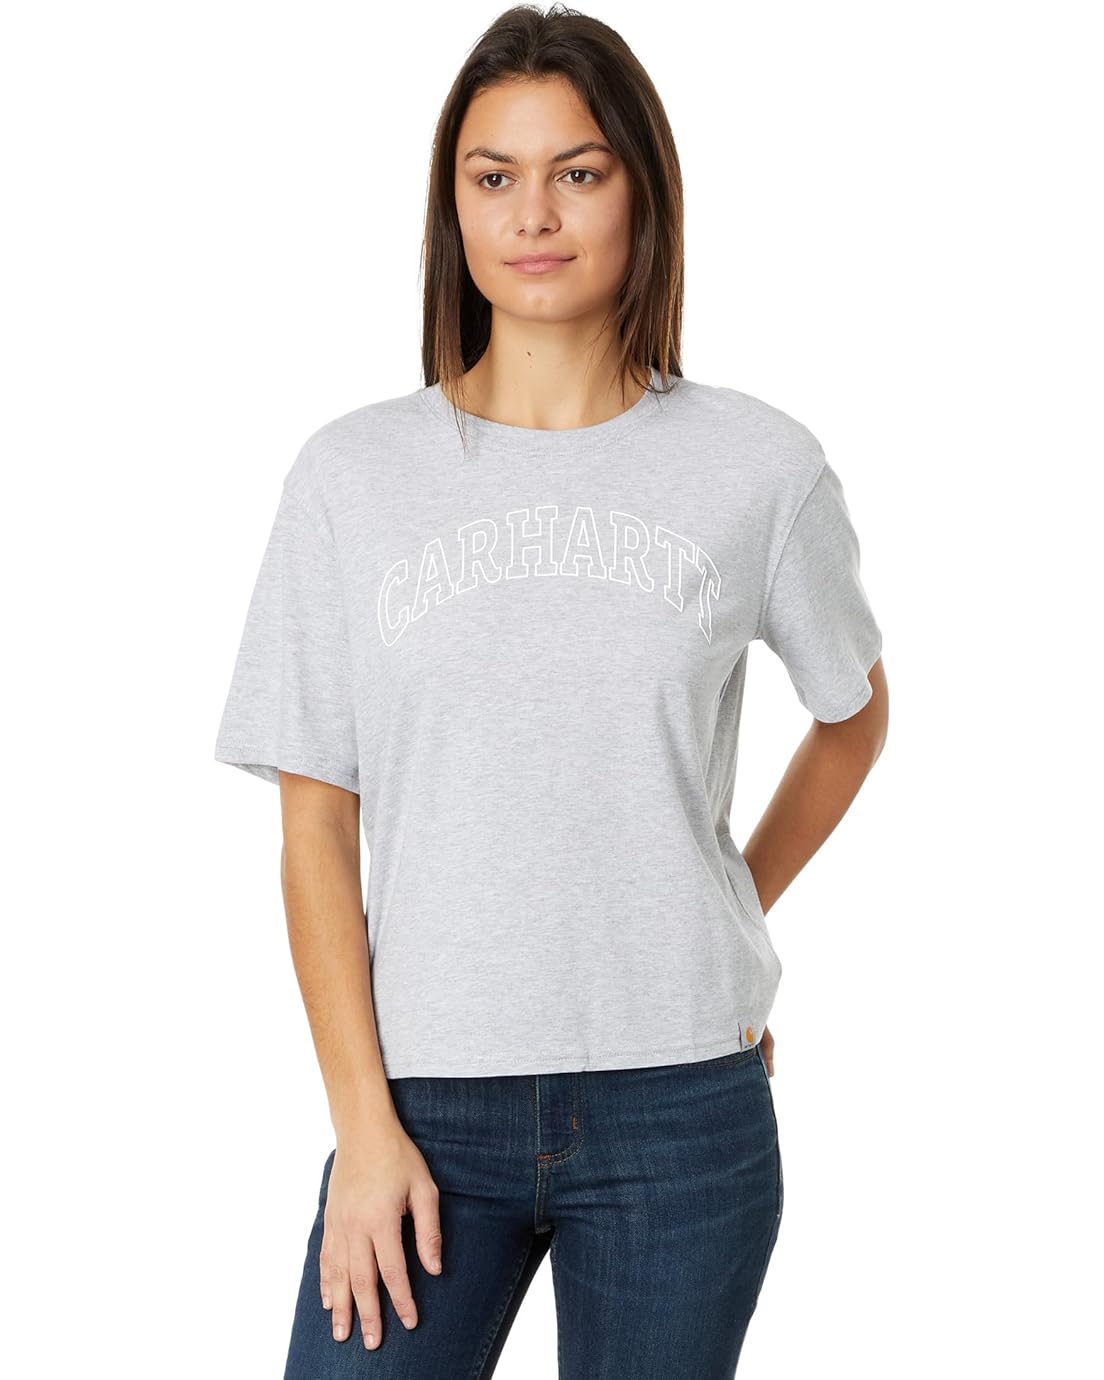 Carhartt Loose Fit Lightweight Short Sleeve Carhartt Graphic T-Shirt